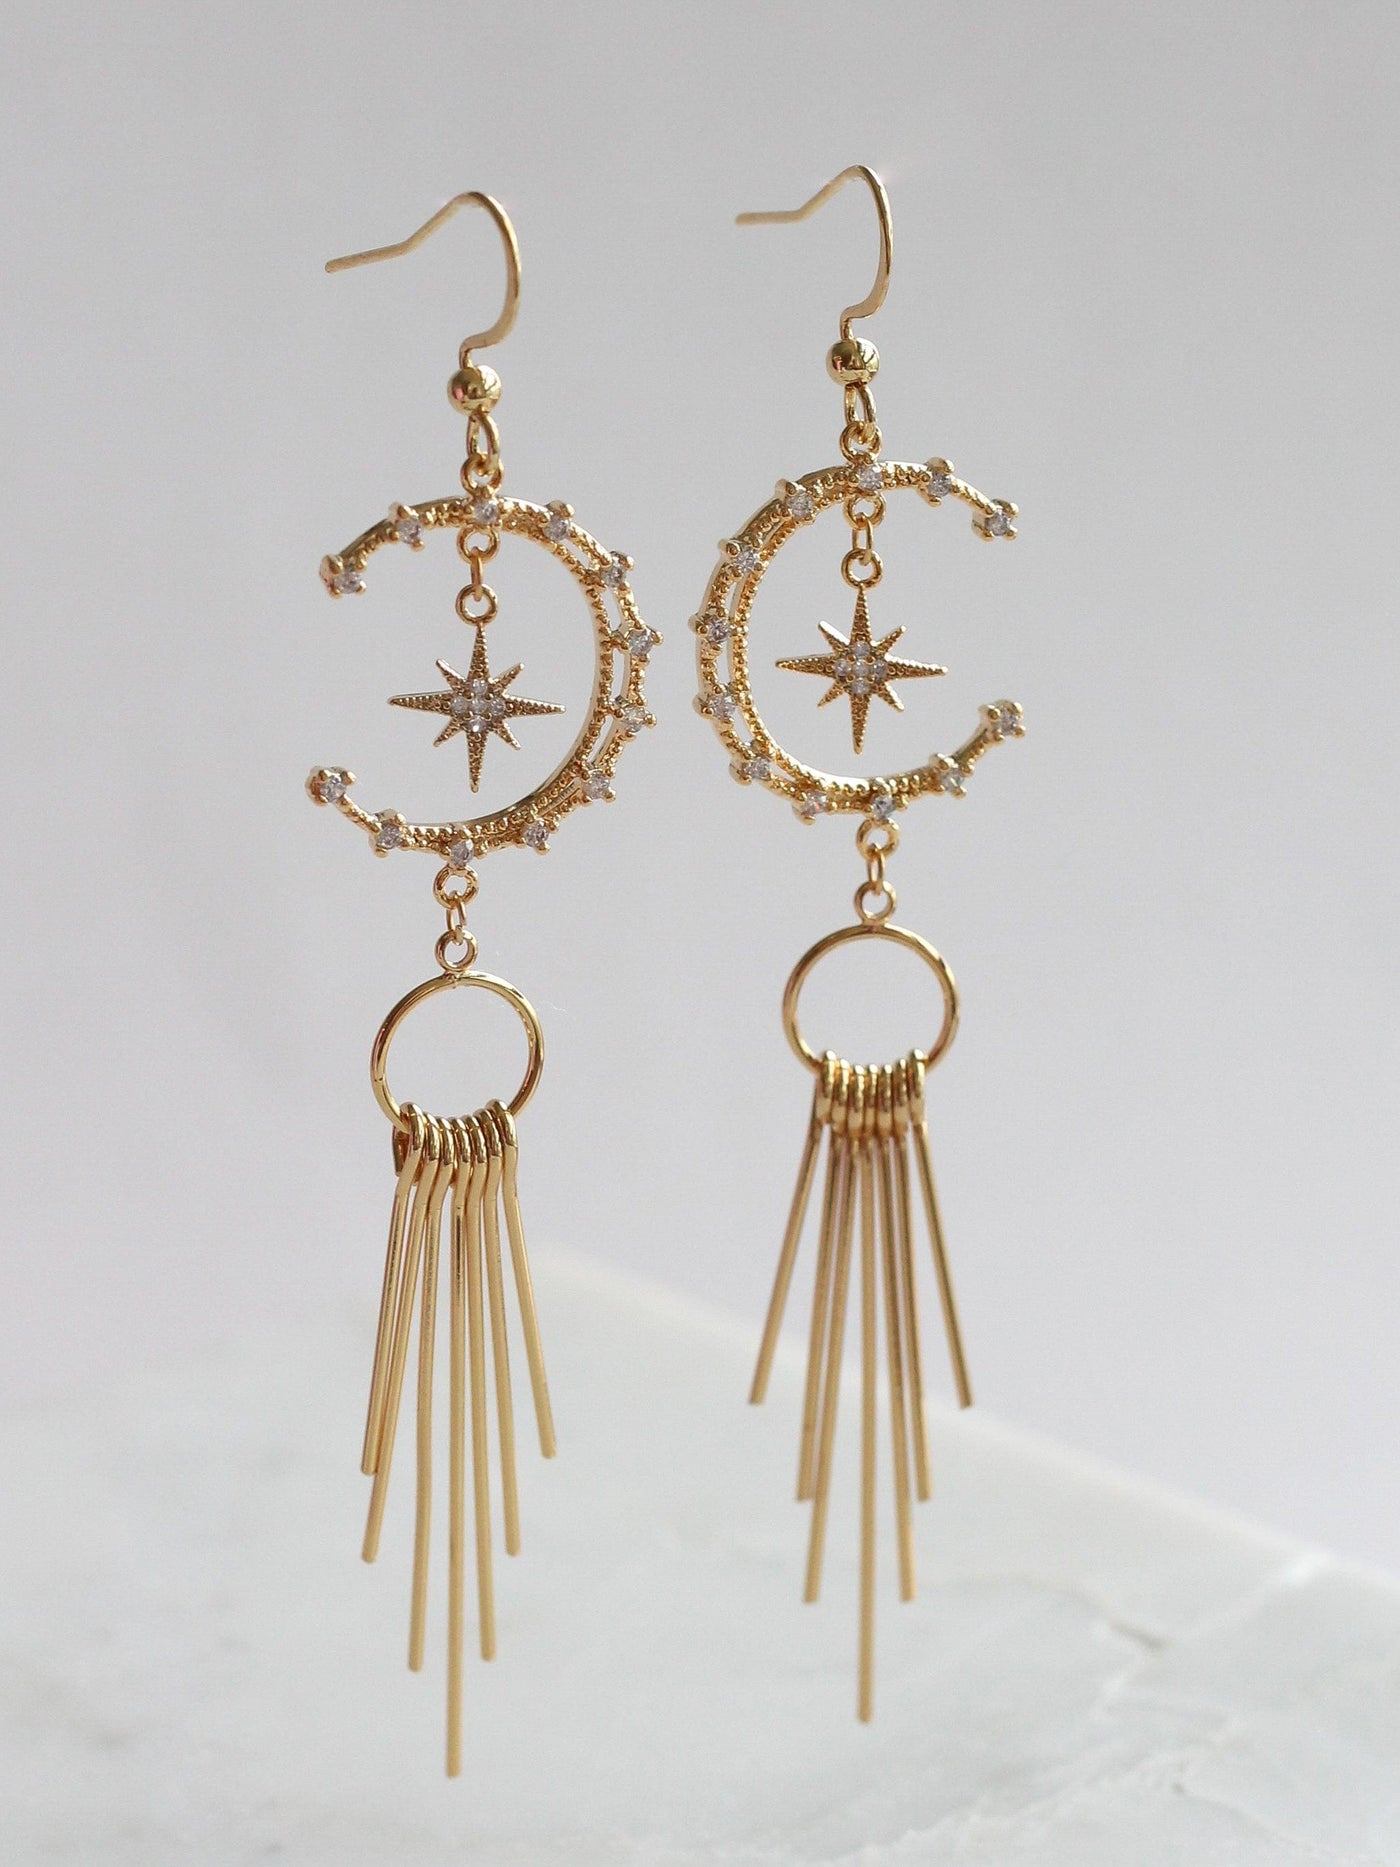 Stargazer earrings